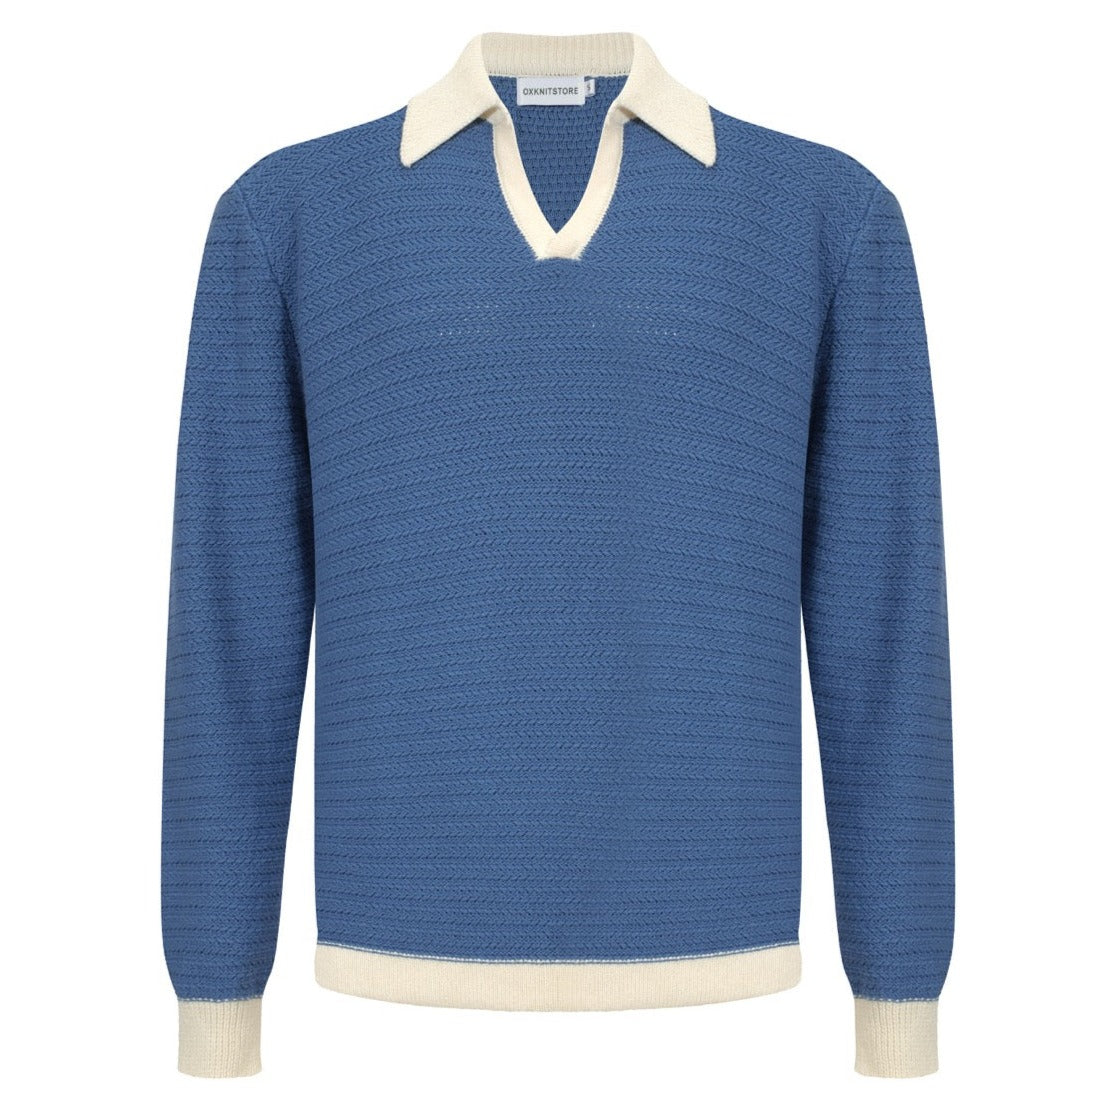 Men's Light Blue Knitted Long Sleeves Polo